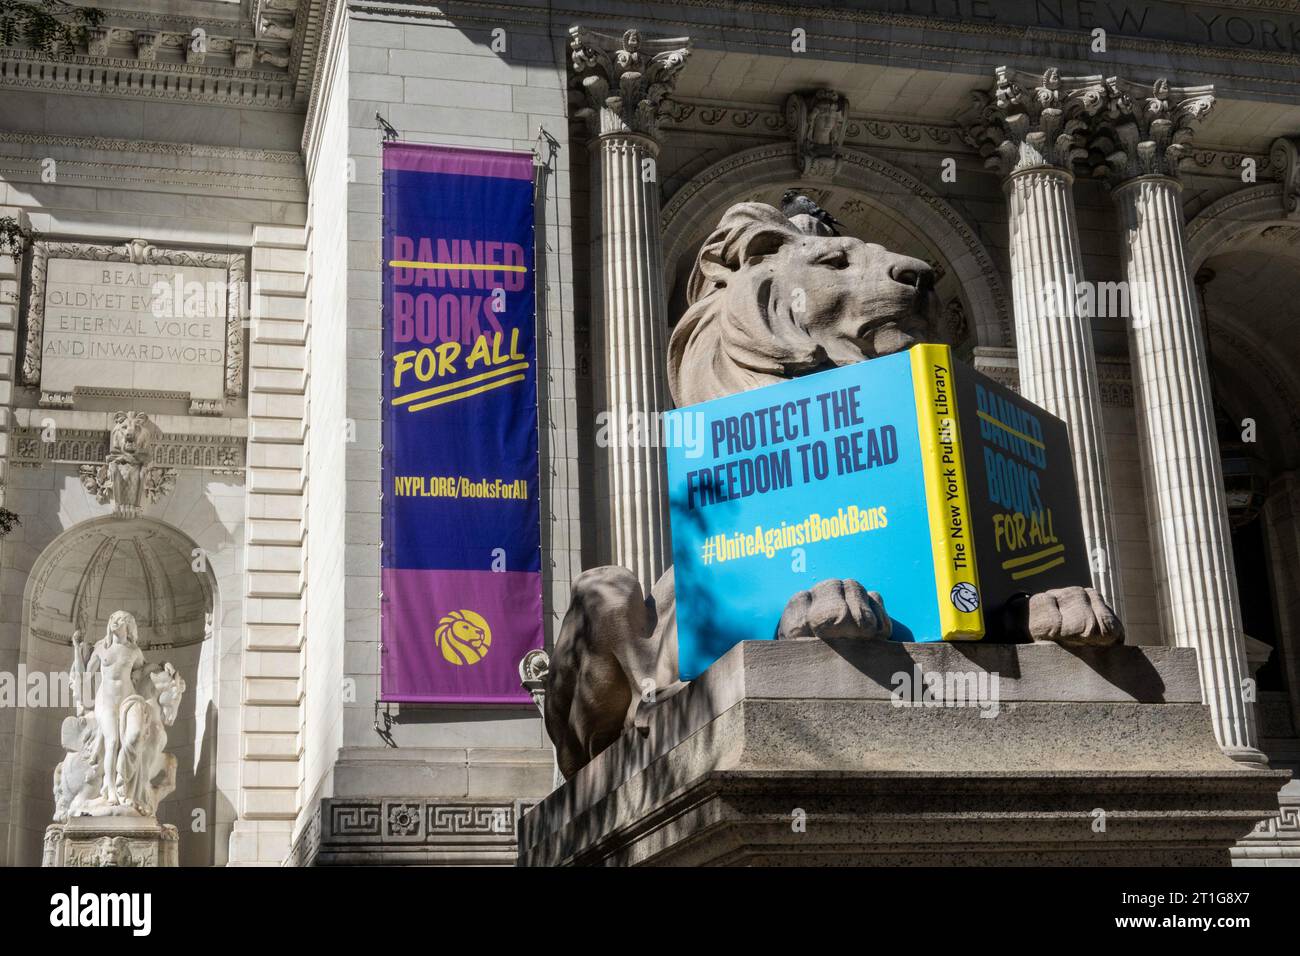 Geduld, die Löwenstatue der Bibliothek, feiert die Freiheit, in der Hauptbibliothek an der Fifth Avenue, 2023, New York City, USA, zu lesen Stockfoto